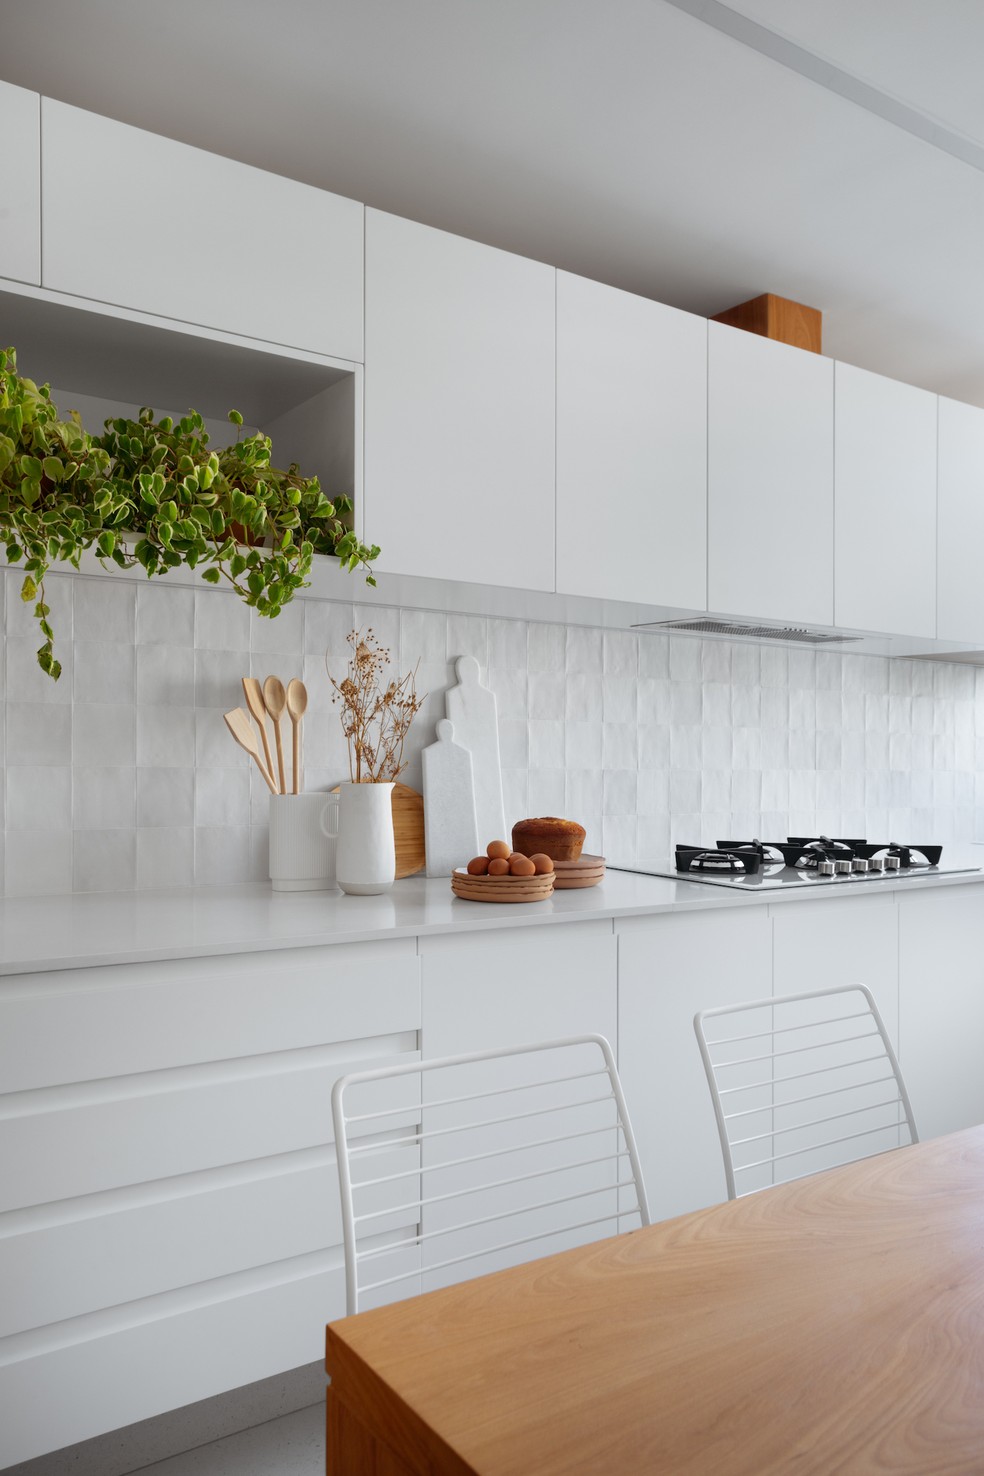 COZINHA | A cozinha branca tem uma atmosfera clássica e clean — Foto: Denilson Machado / Divulgação | Produção: Andrea Brito